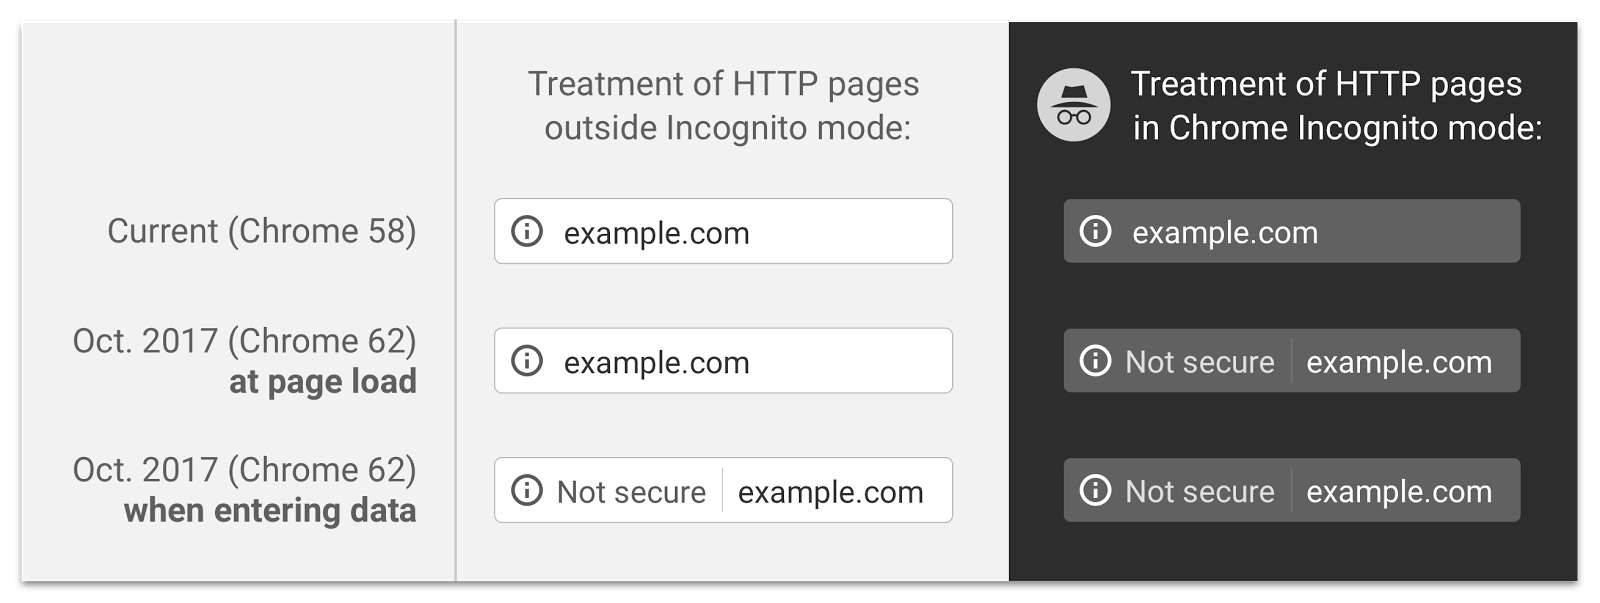 Páginas no seguras HTTP Google Chrome 62